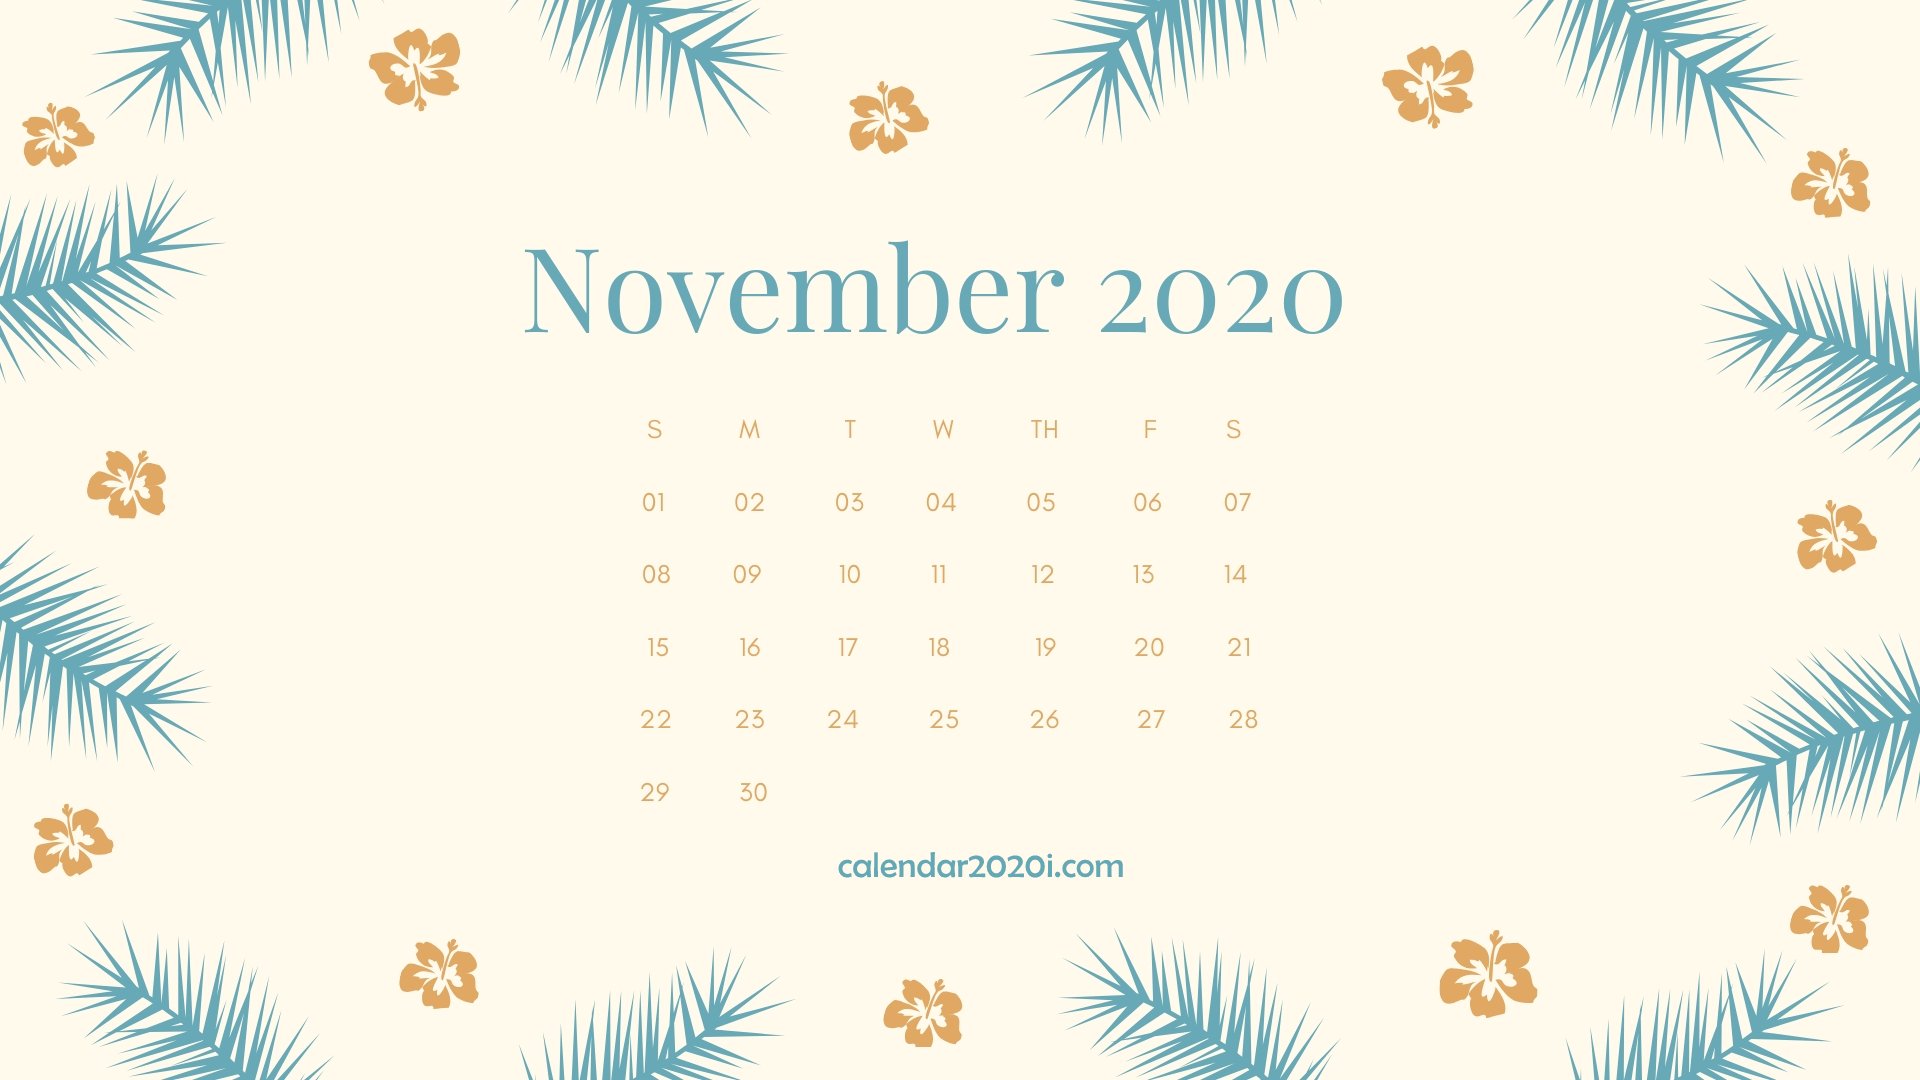 2020 Calendar Monthly HD Wallpapers Calendar 2020